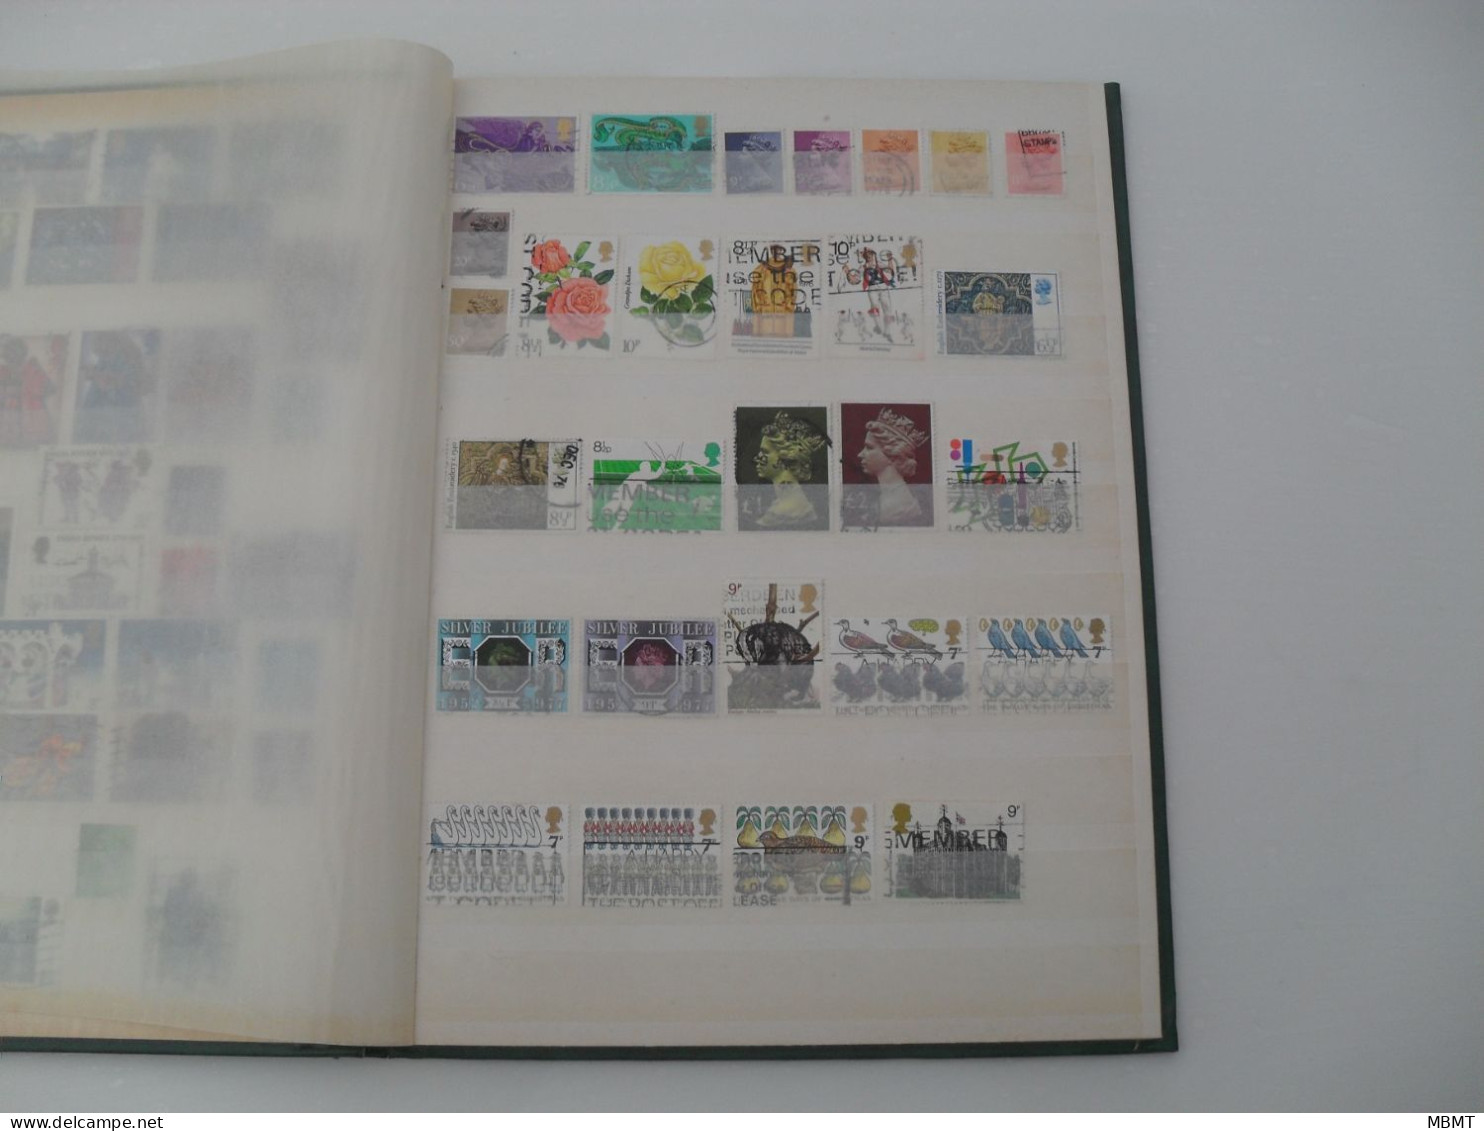 Album N°16 - année 1855 à l'année 2004 - Collections timbres oblitéré Grande-Bretagne et GB définitif -